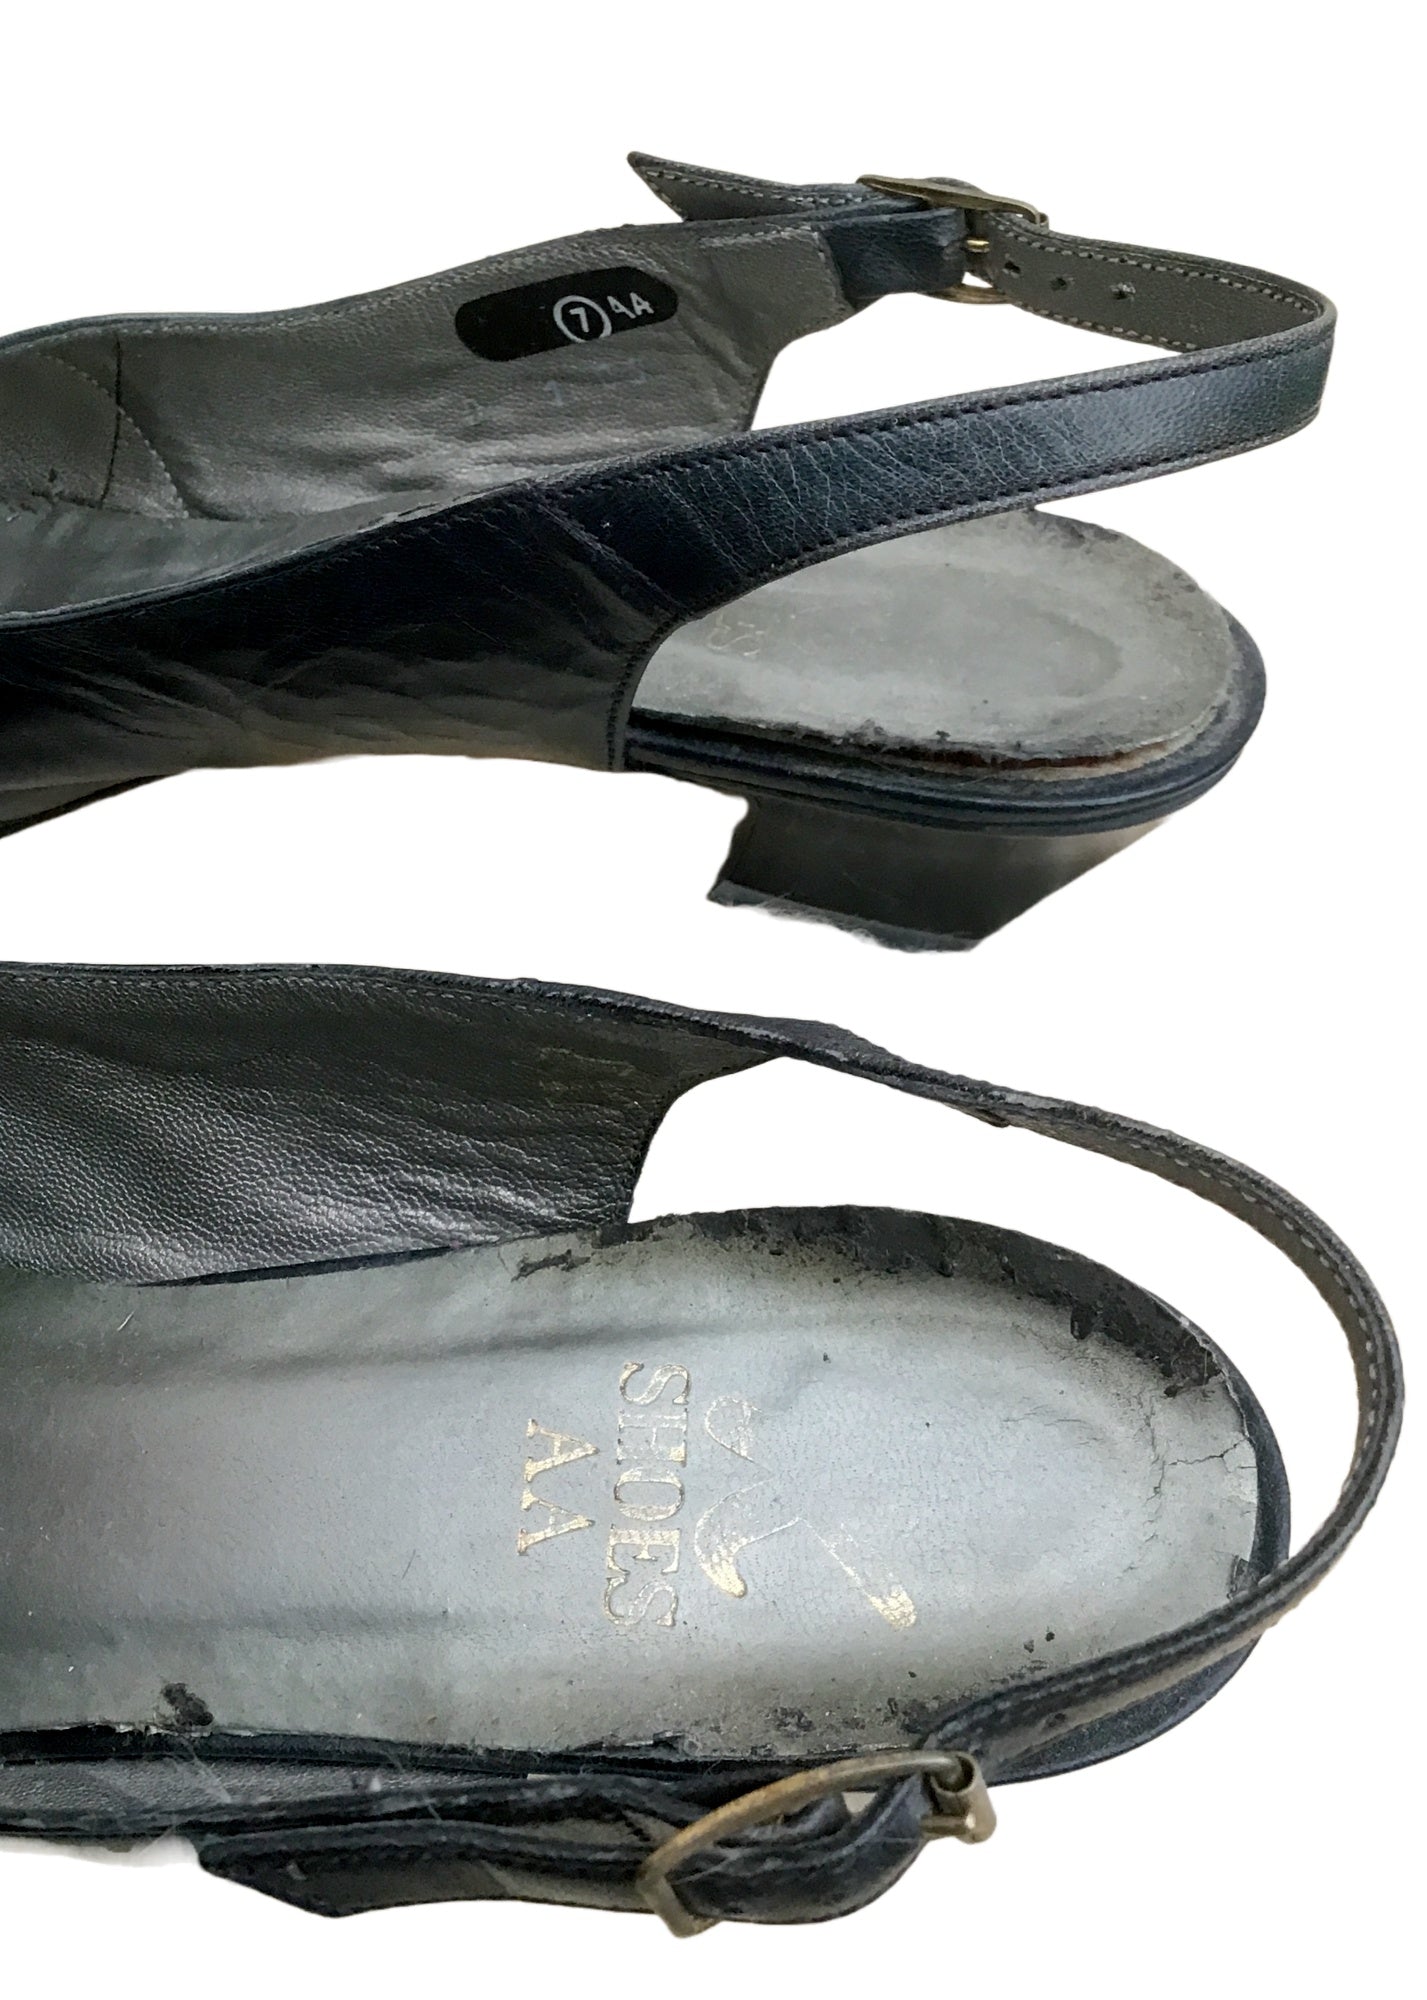 Vintage 80s Navy Blue K Slingback Sandals Shoes • Clarkes Shoes • size UK7A